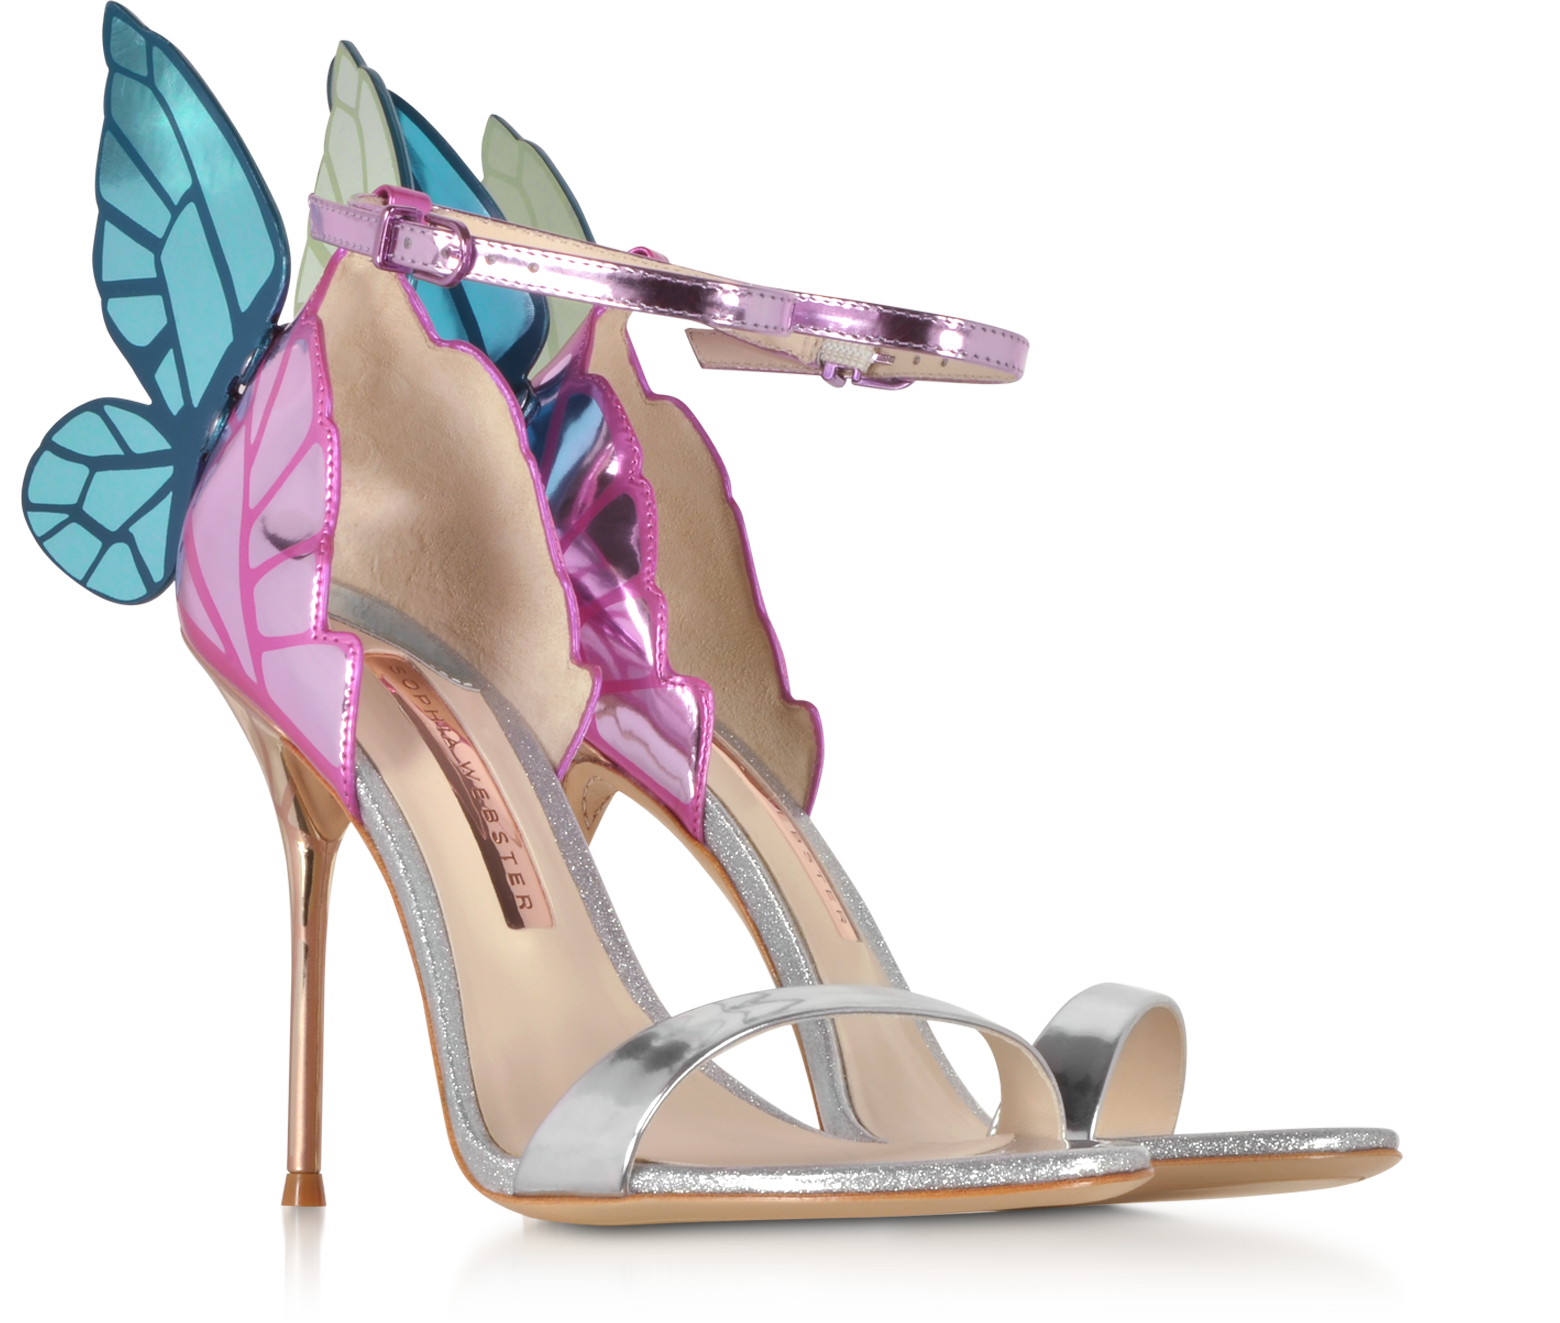 sophia webster's heels